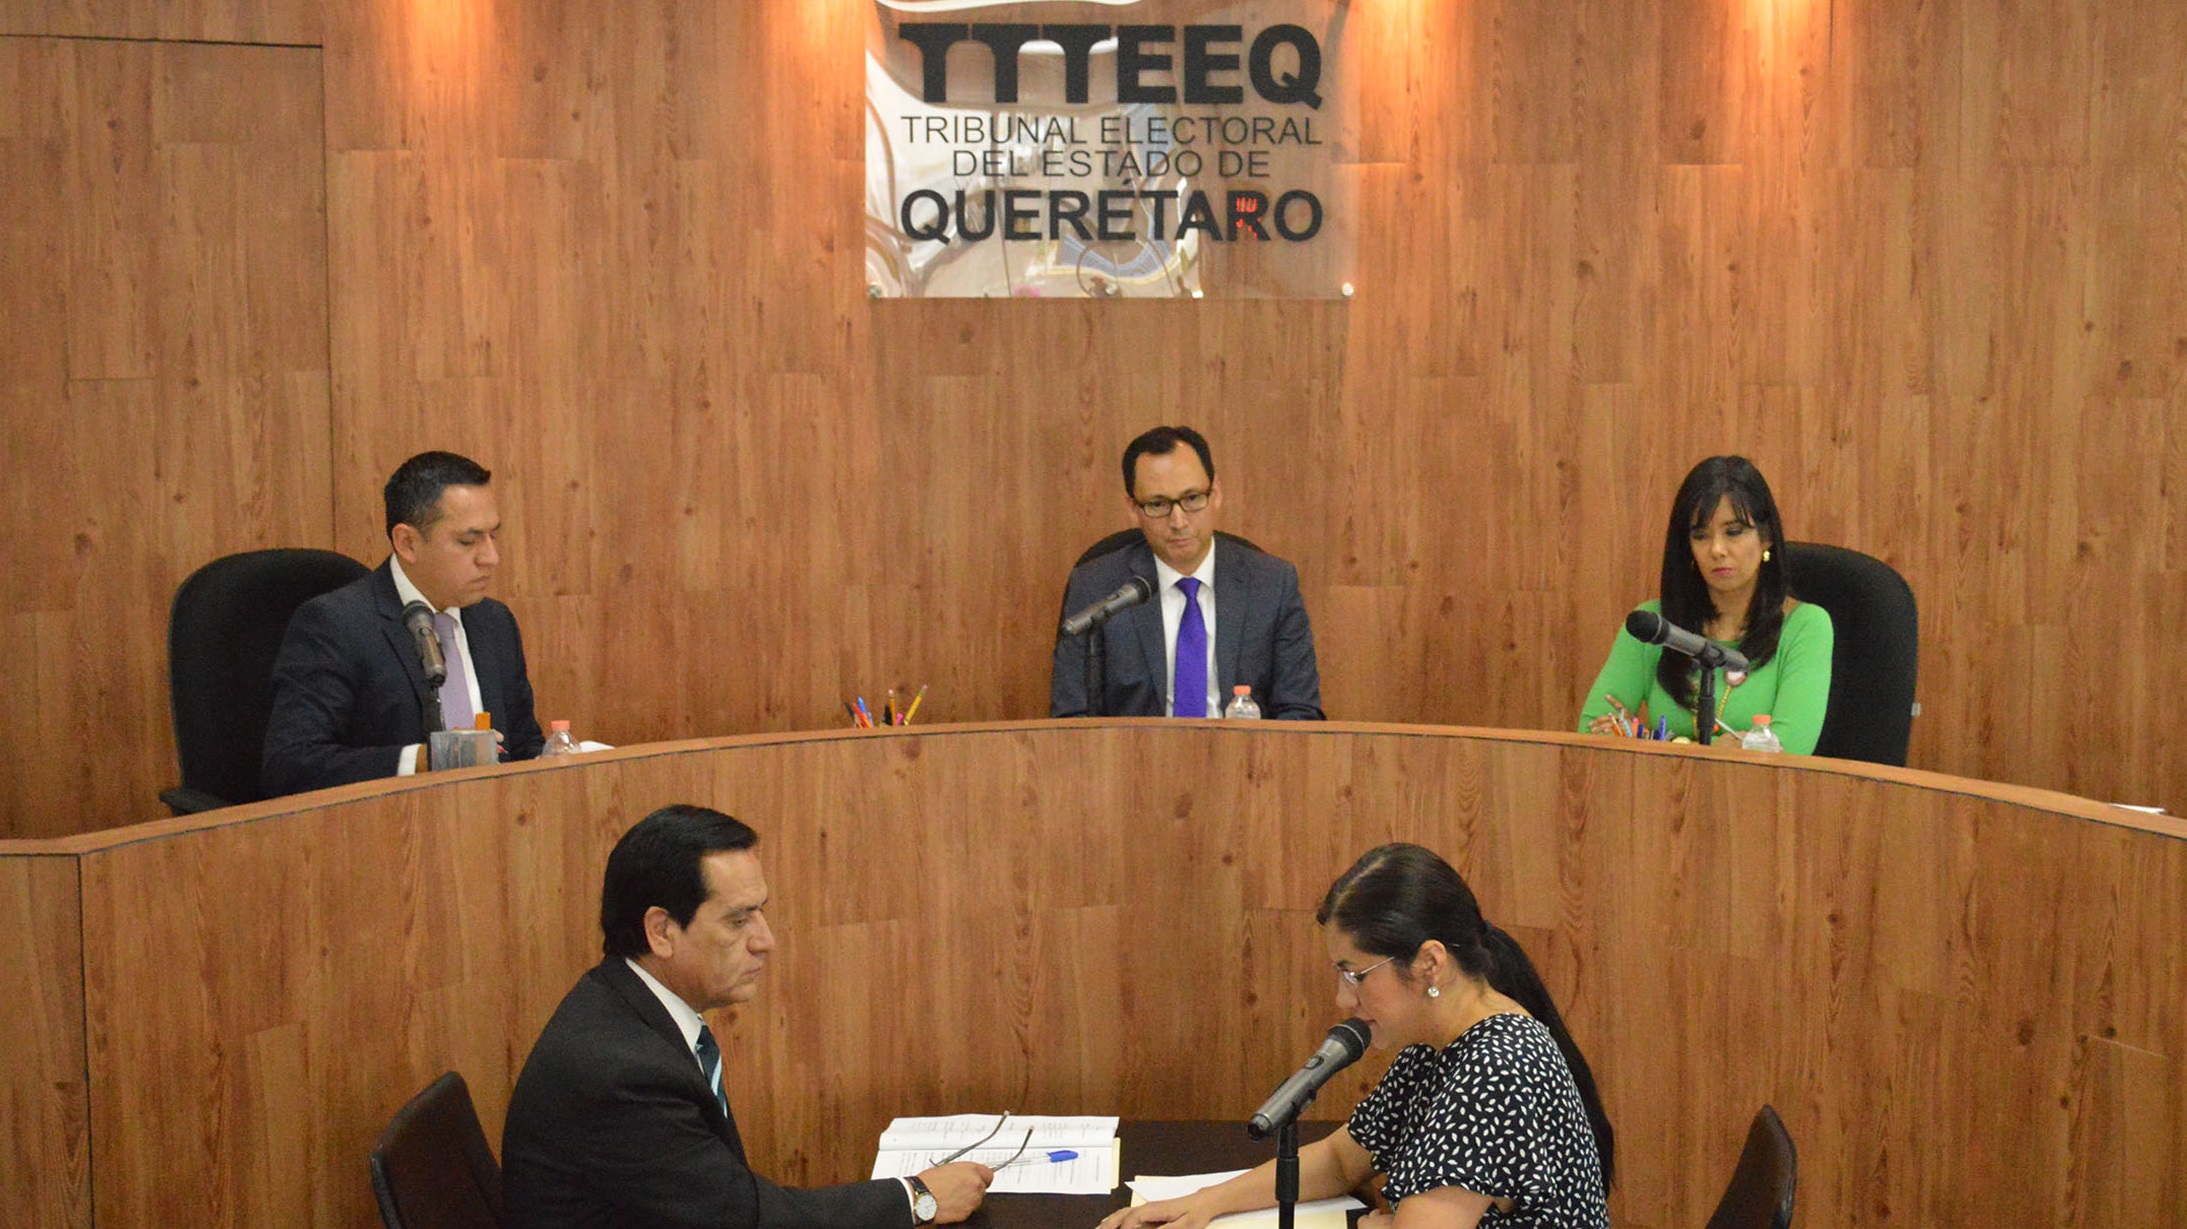  Ratifica TEEQ a Adolfo Ríos como candidato a la presidencia municipal de Querétaro